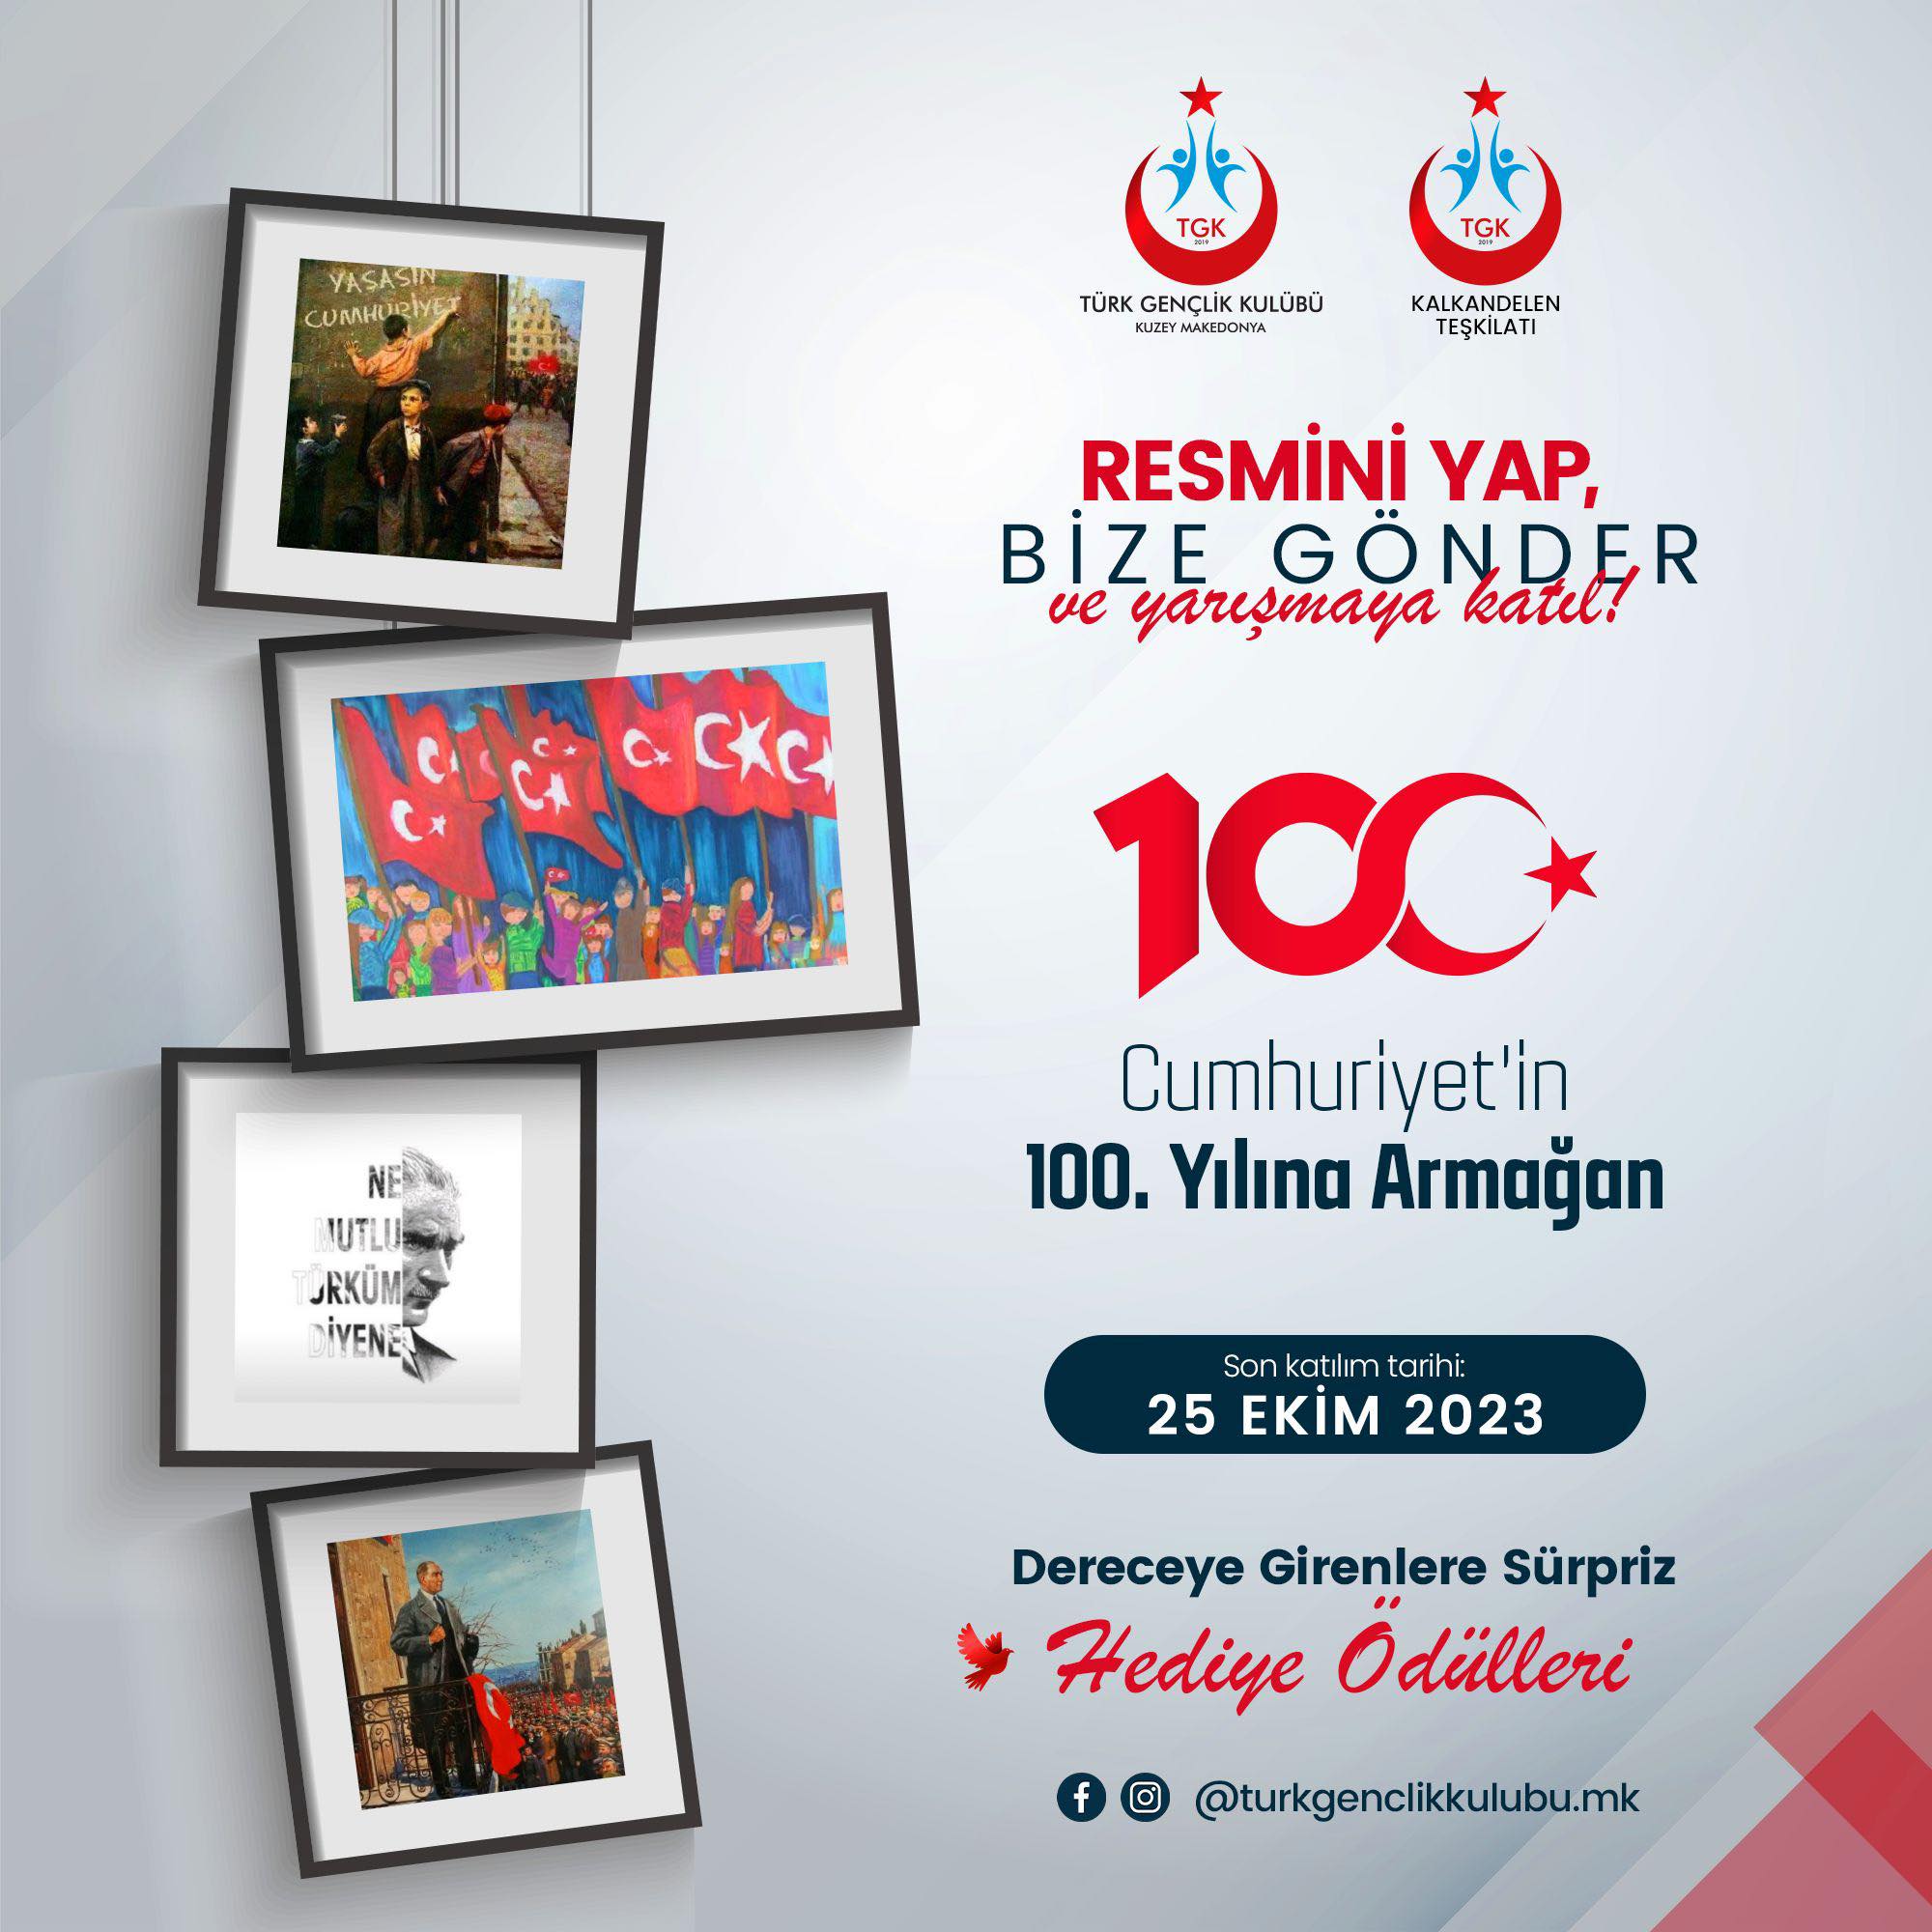 TGK Kalkandelen Teşkilatı, 29 Ekim Cumhuriyet Bayramı konulu resim yarışması düzenliyor